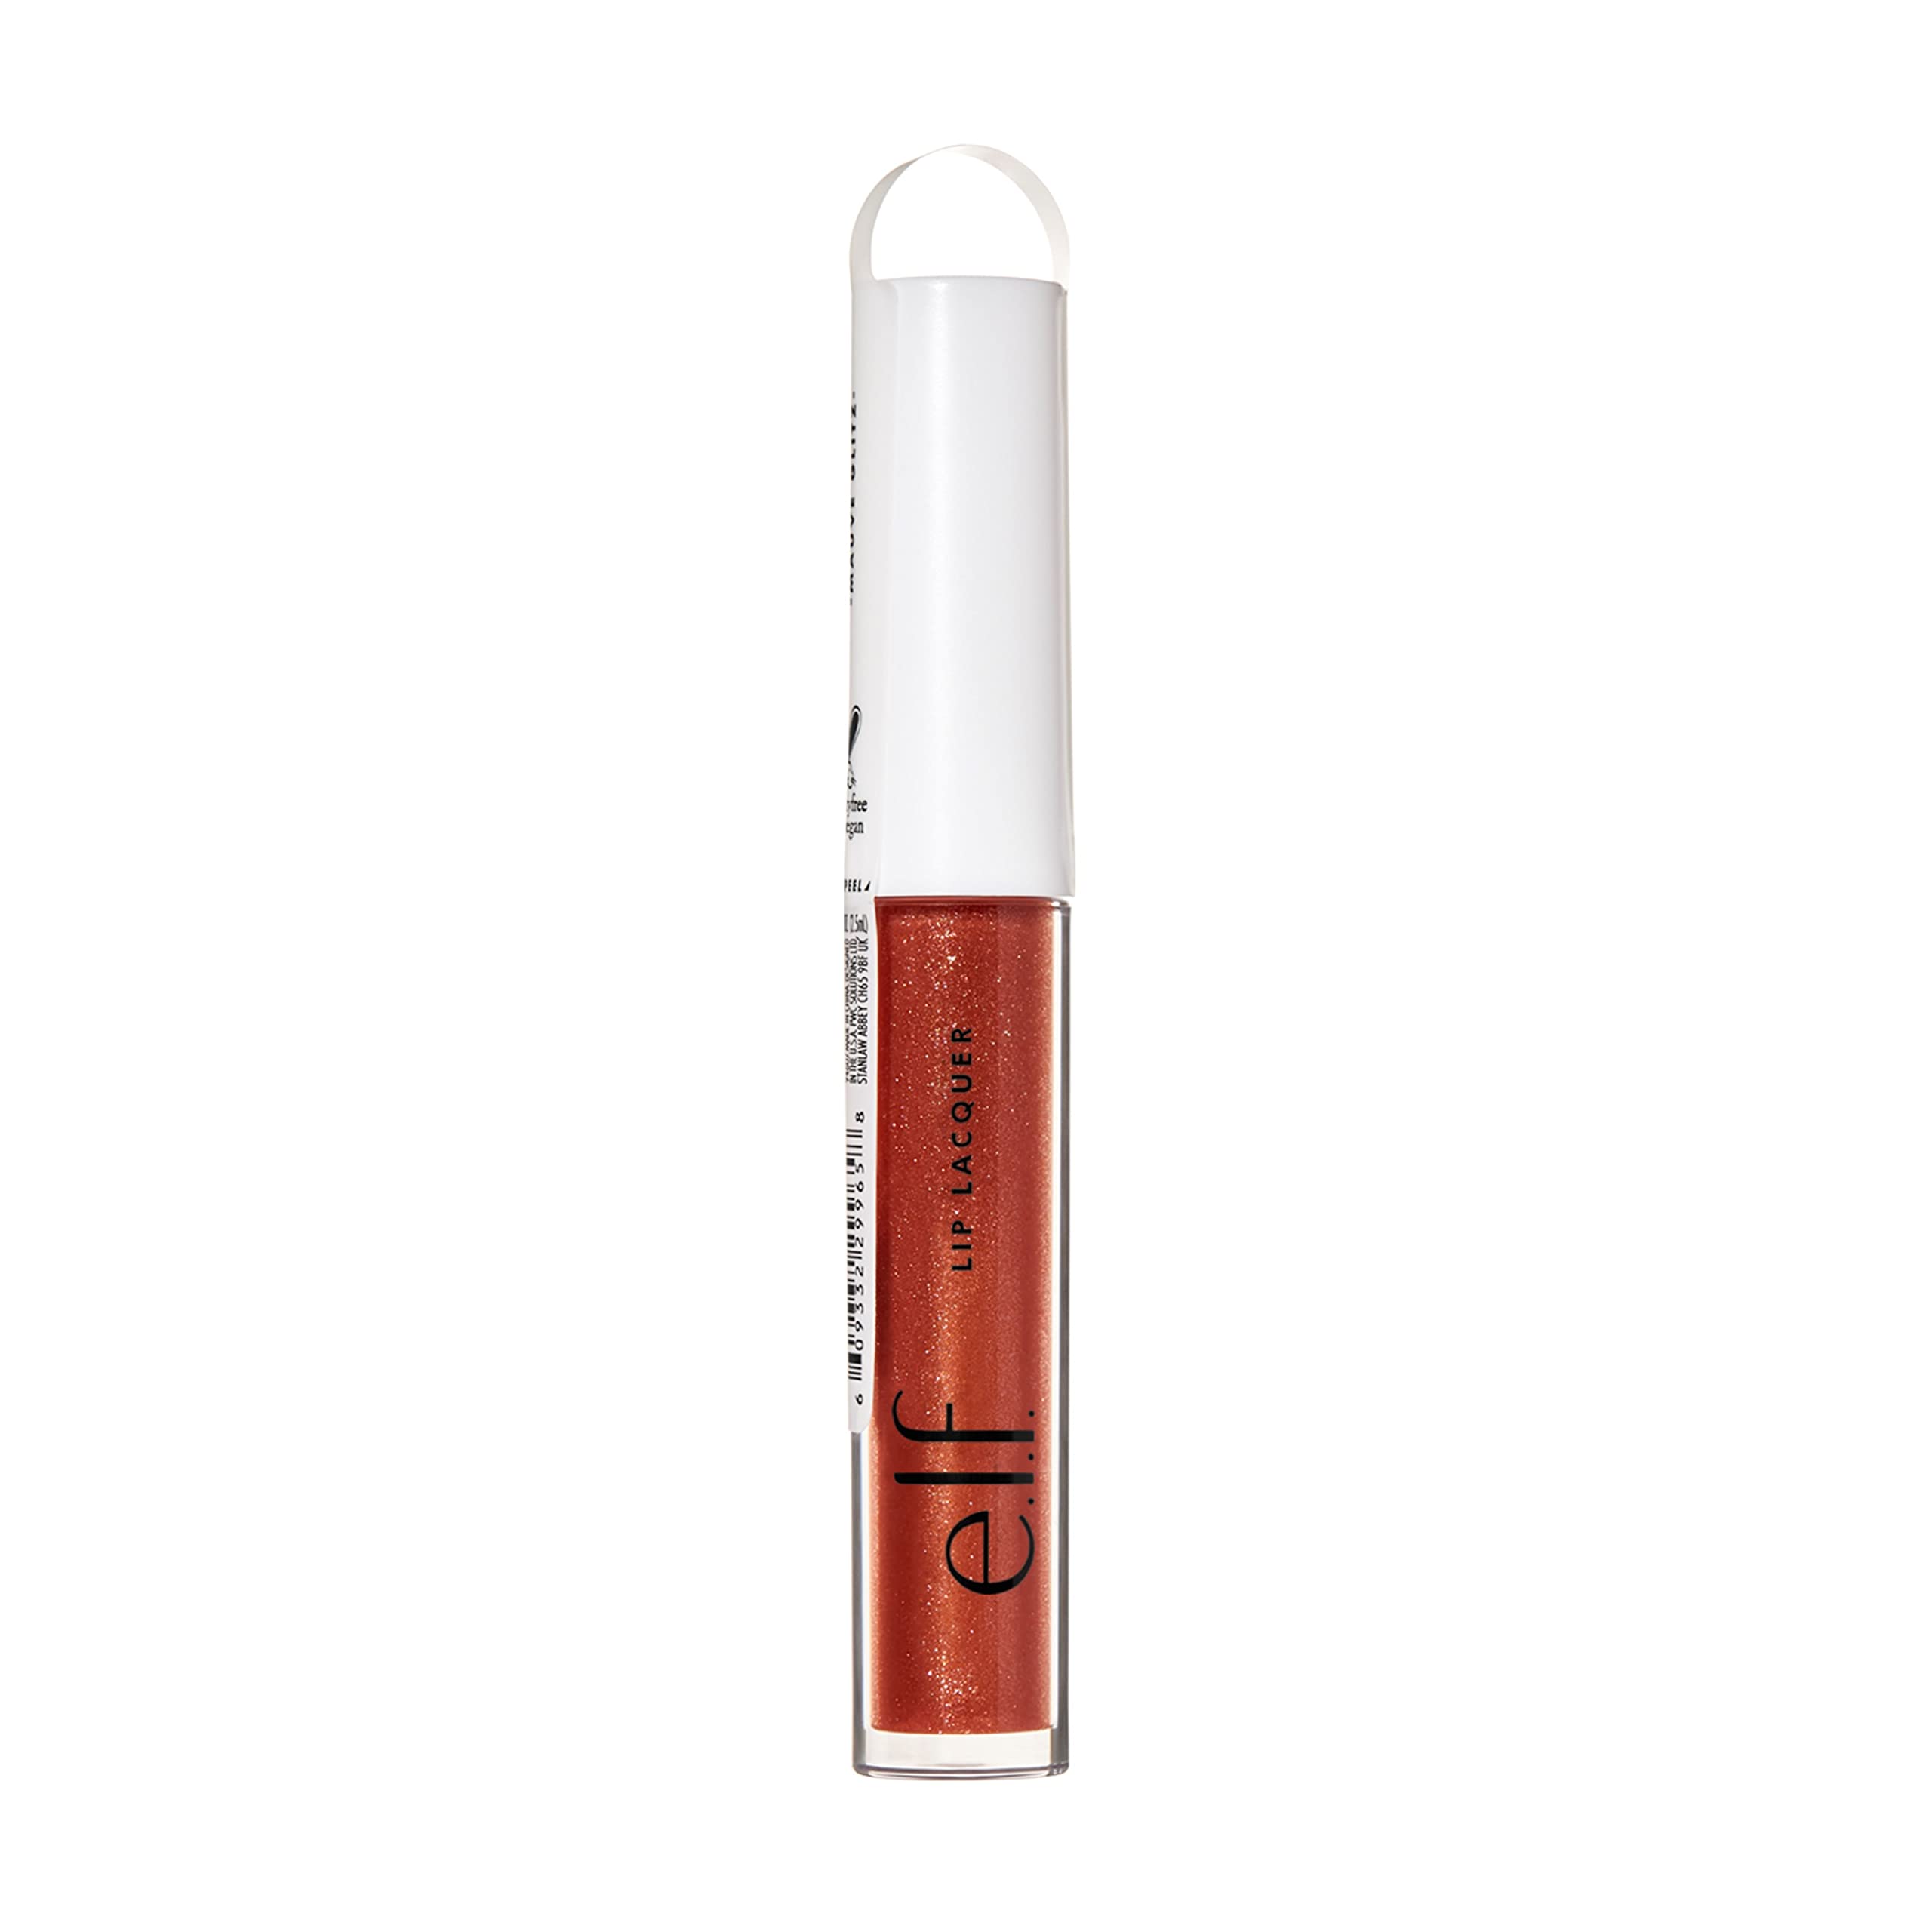 e.l.f. Lip Lacquer, Nourishing, Non-Sticky Ultra-Shine Lip Gloss With Sheer Color, Infused With Vitamins A & E, Vegan & Cruelty-Free, Mauve Glitz